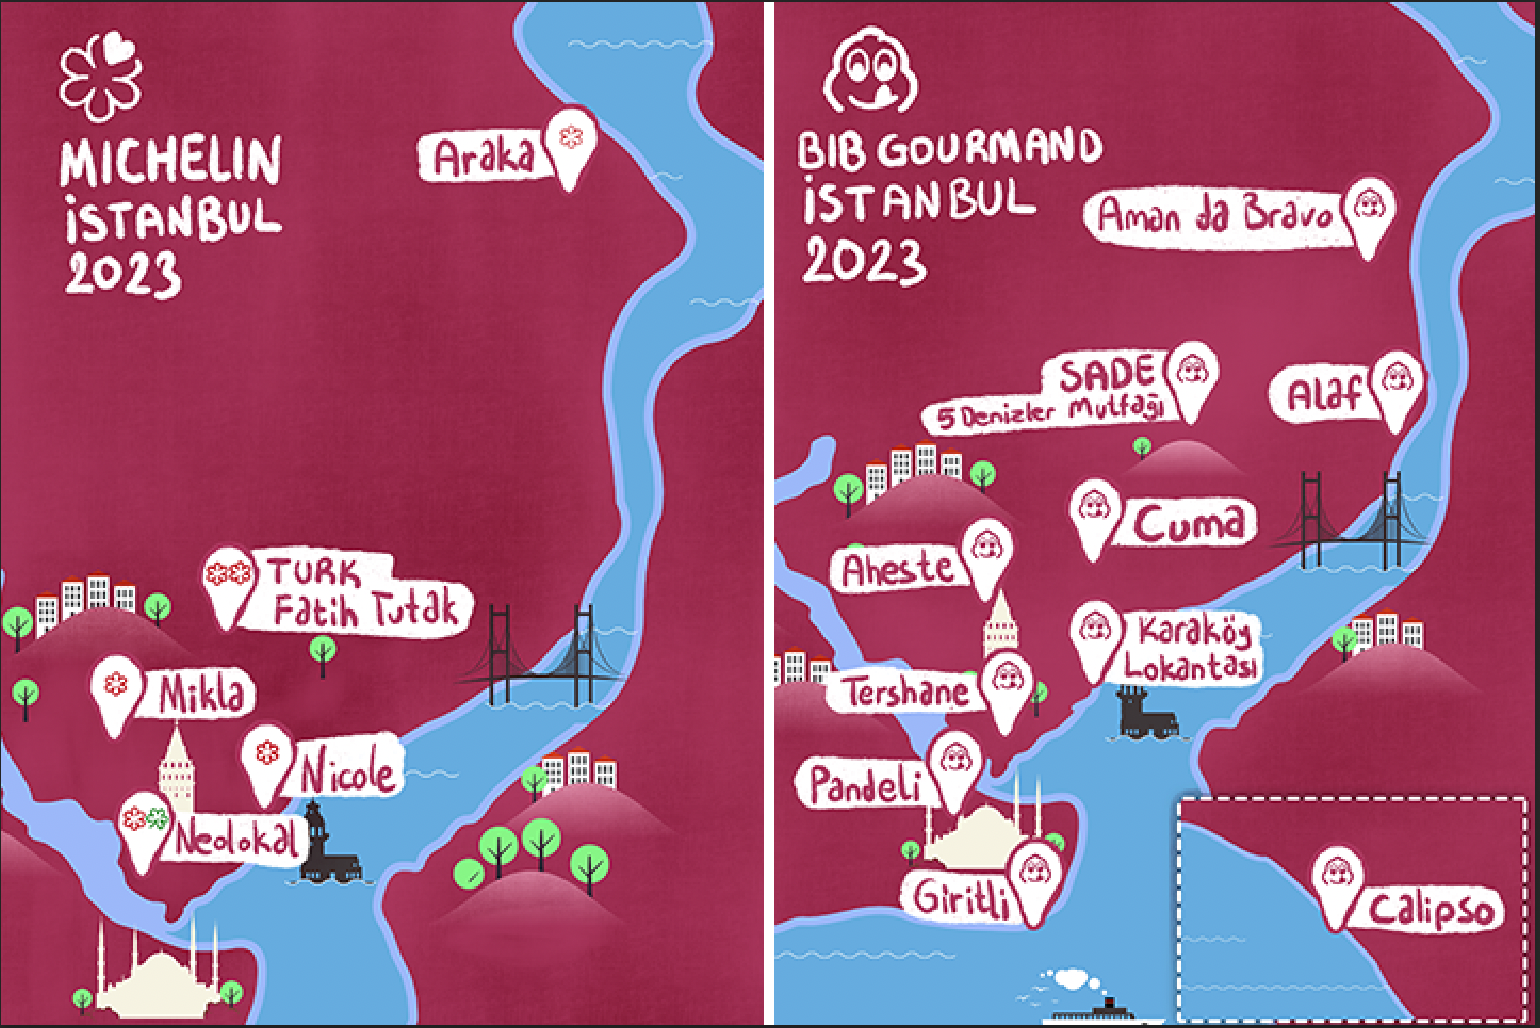 istanbuldaki-michelin-yildizli-restoranlar-harita